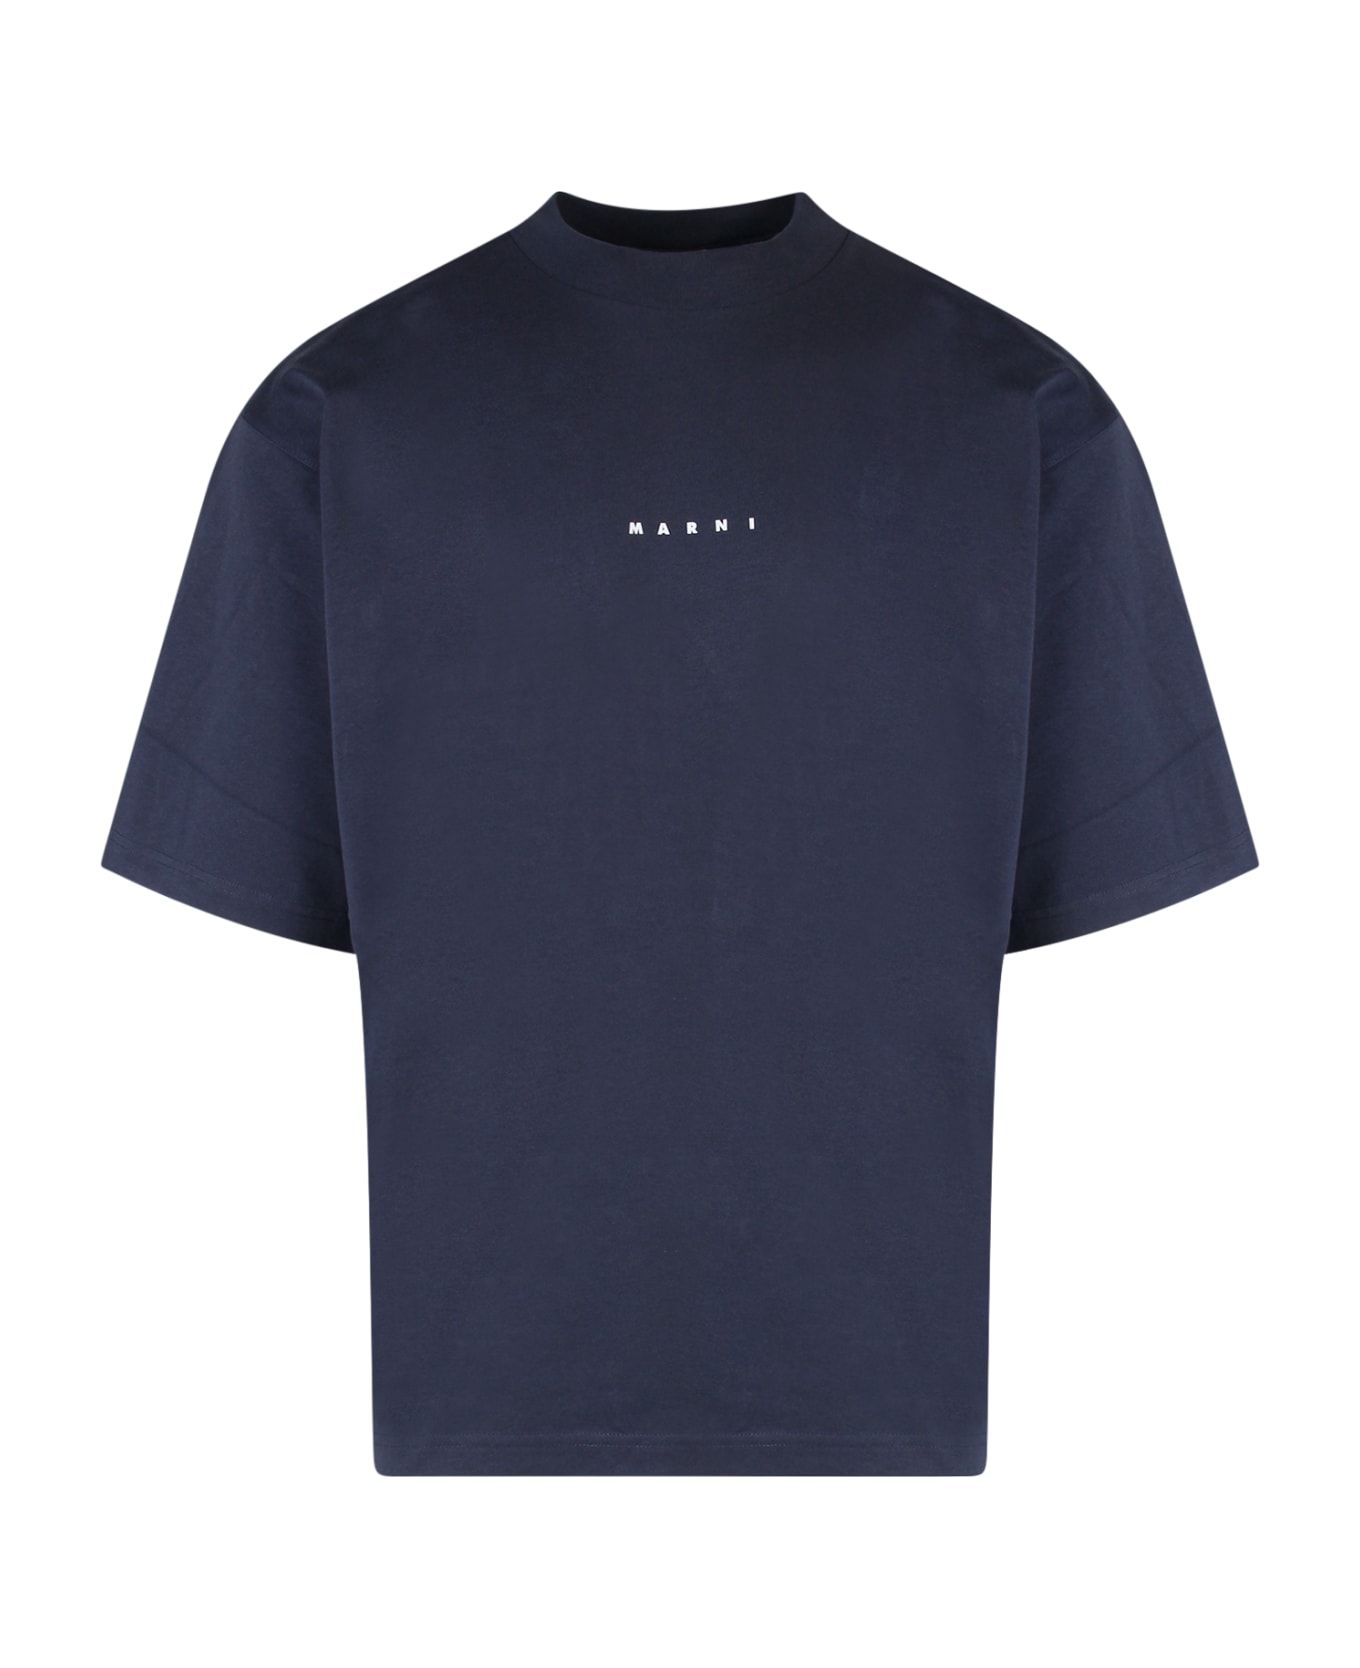 Marni T-shirt Marni - BLUE